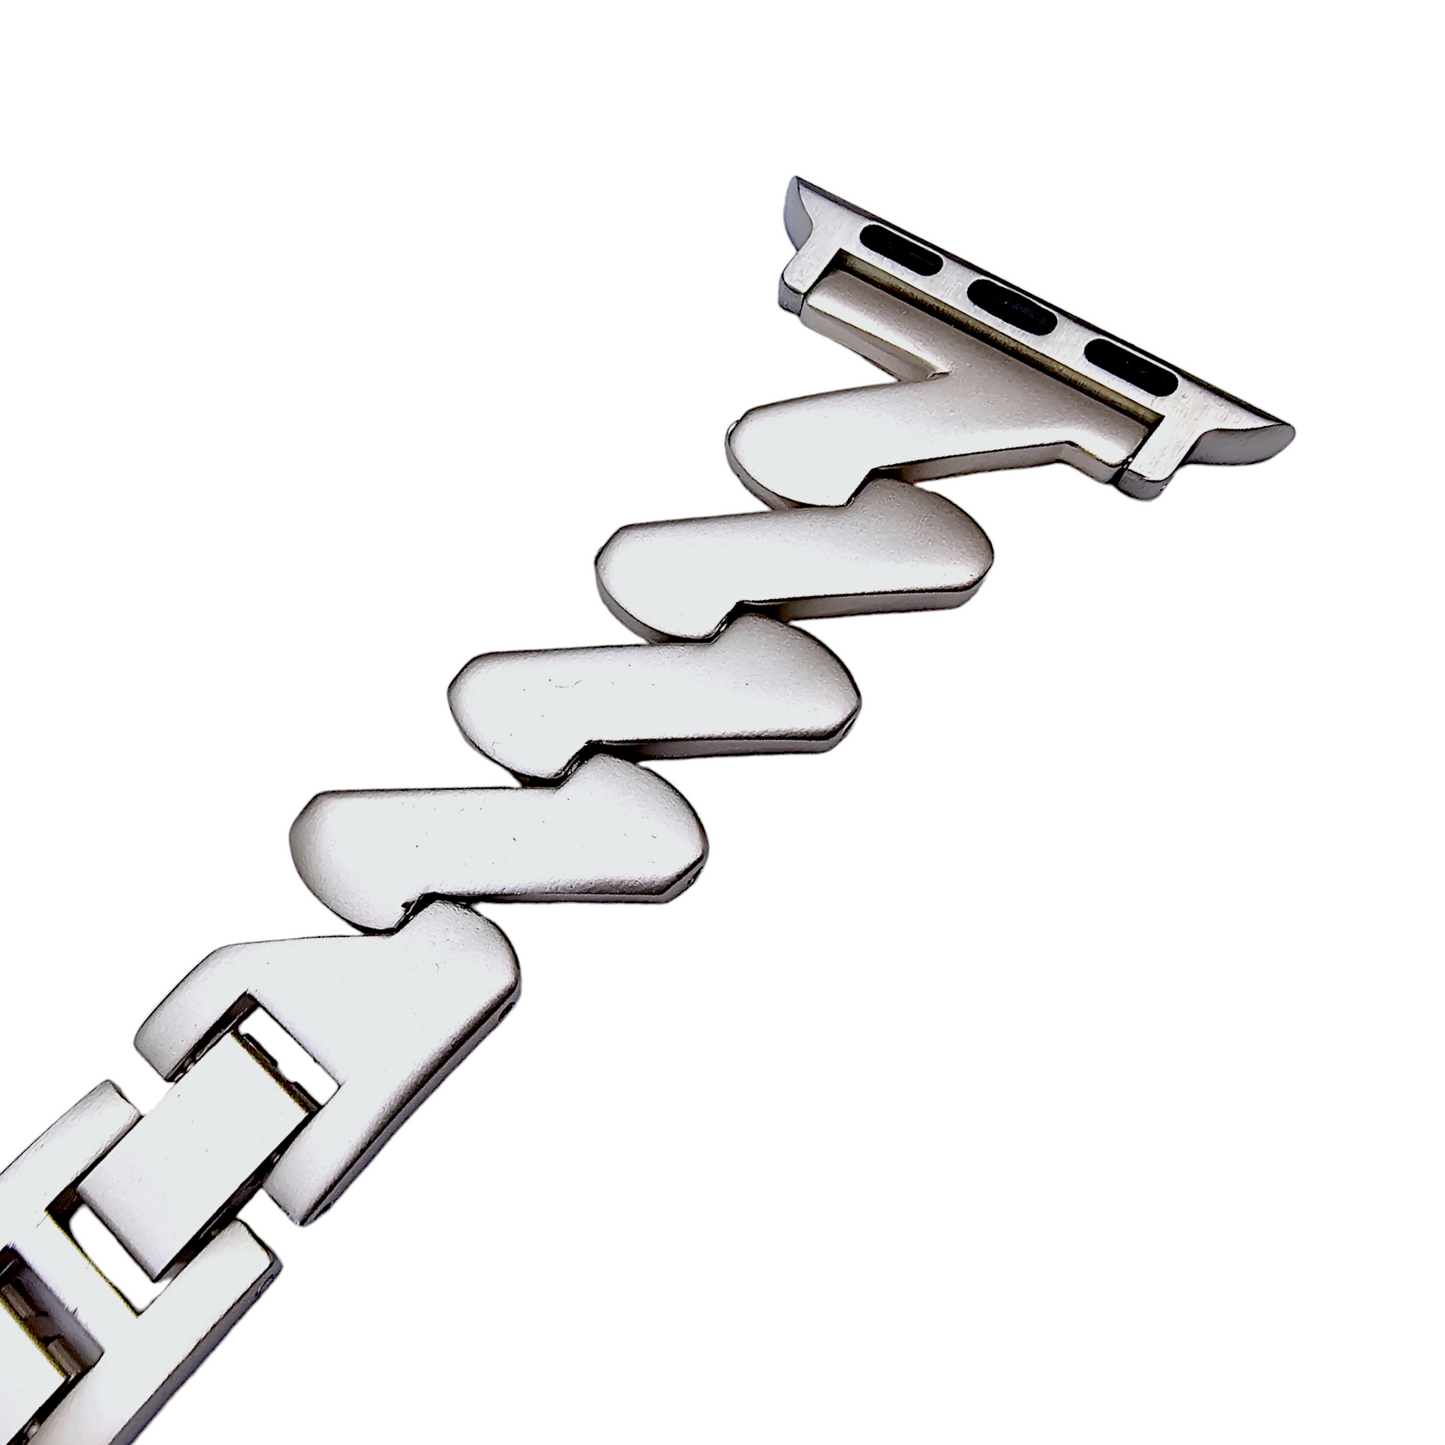 Zig Zag wave pattern Starlight bracelet for Apple Watch Strap Band